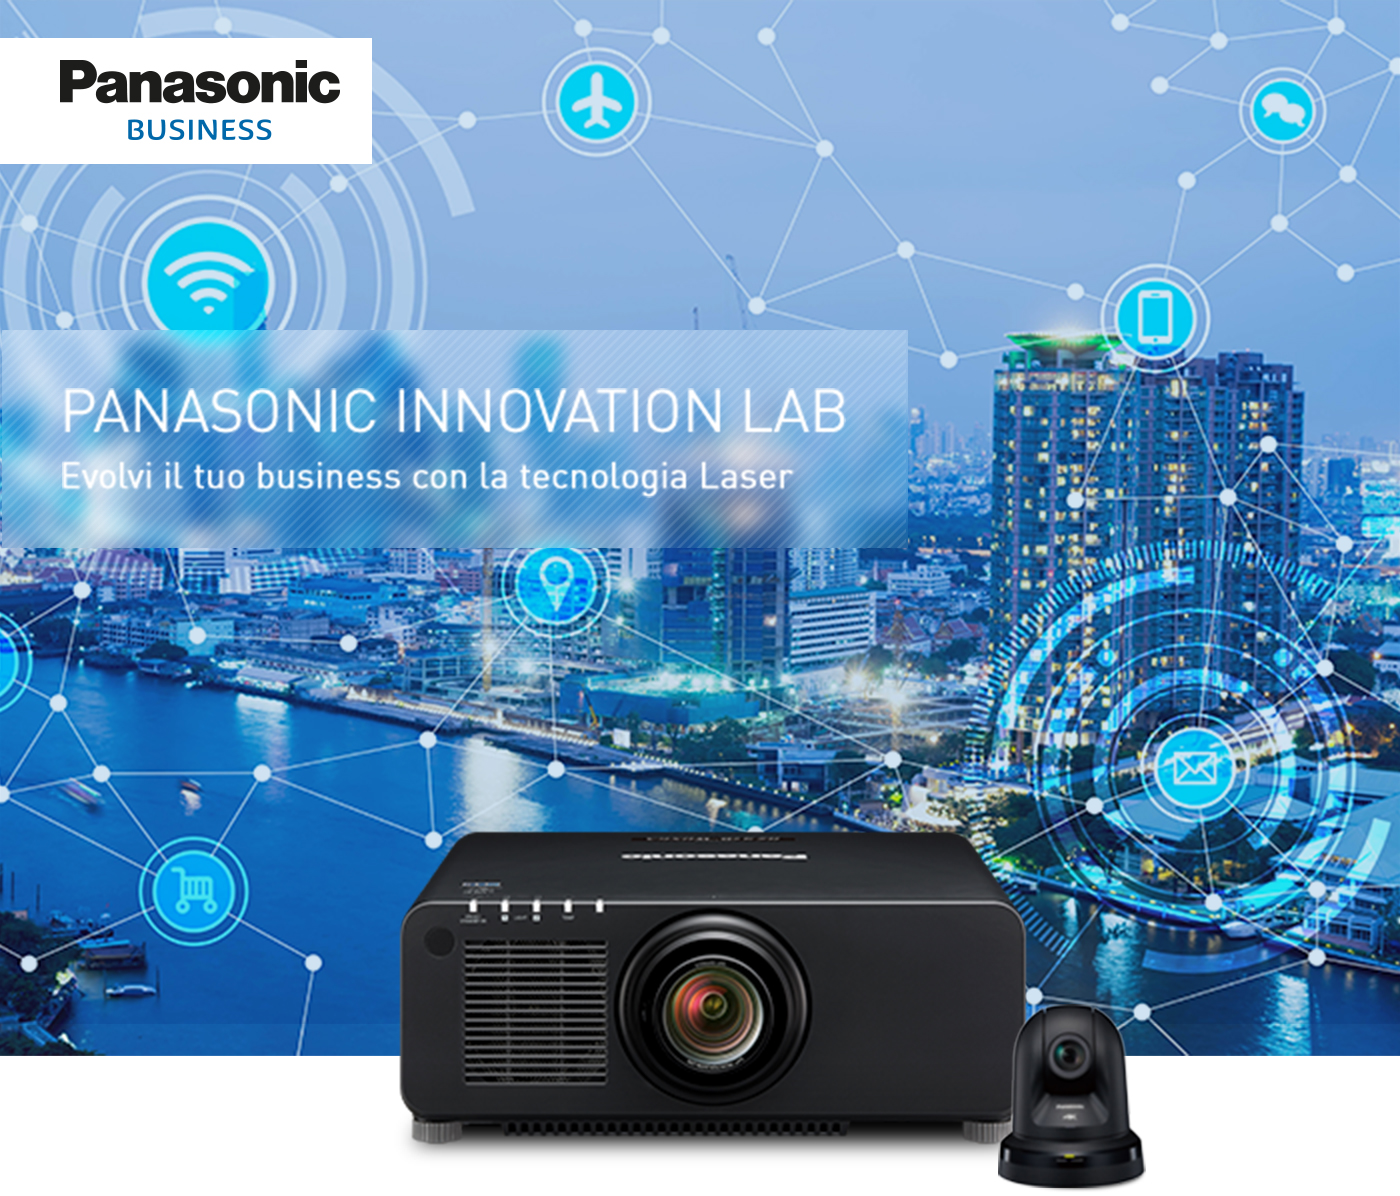 Panasonic Innovation LAB - Evolvi il tuo business con la tecnologia Laser